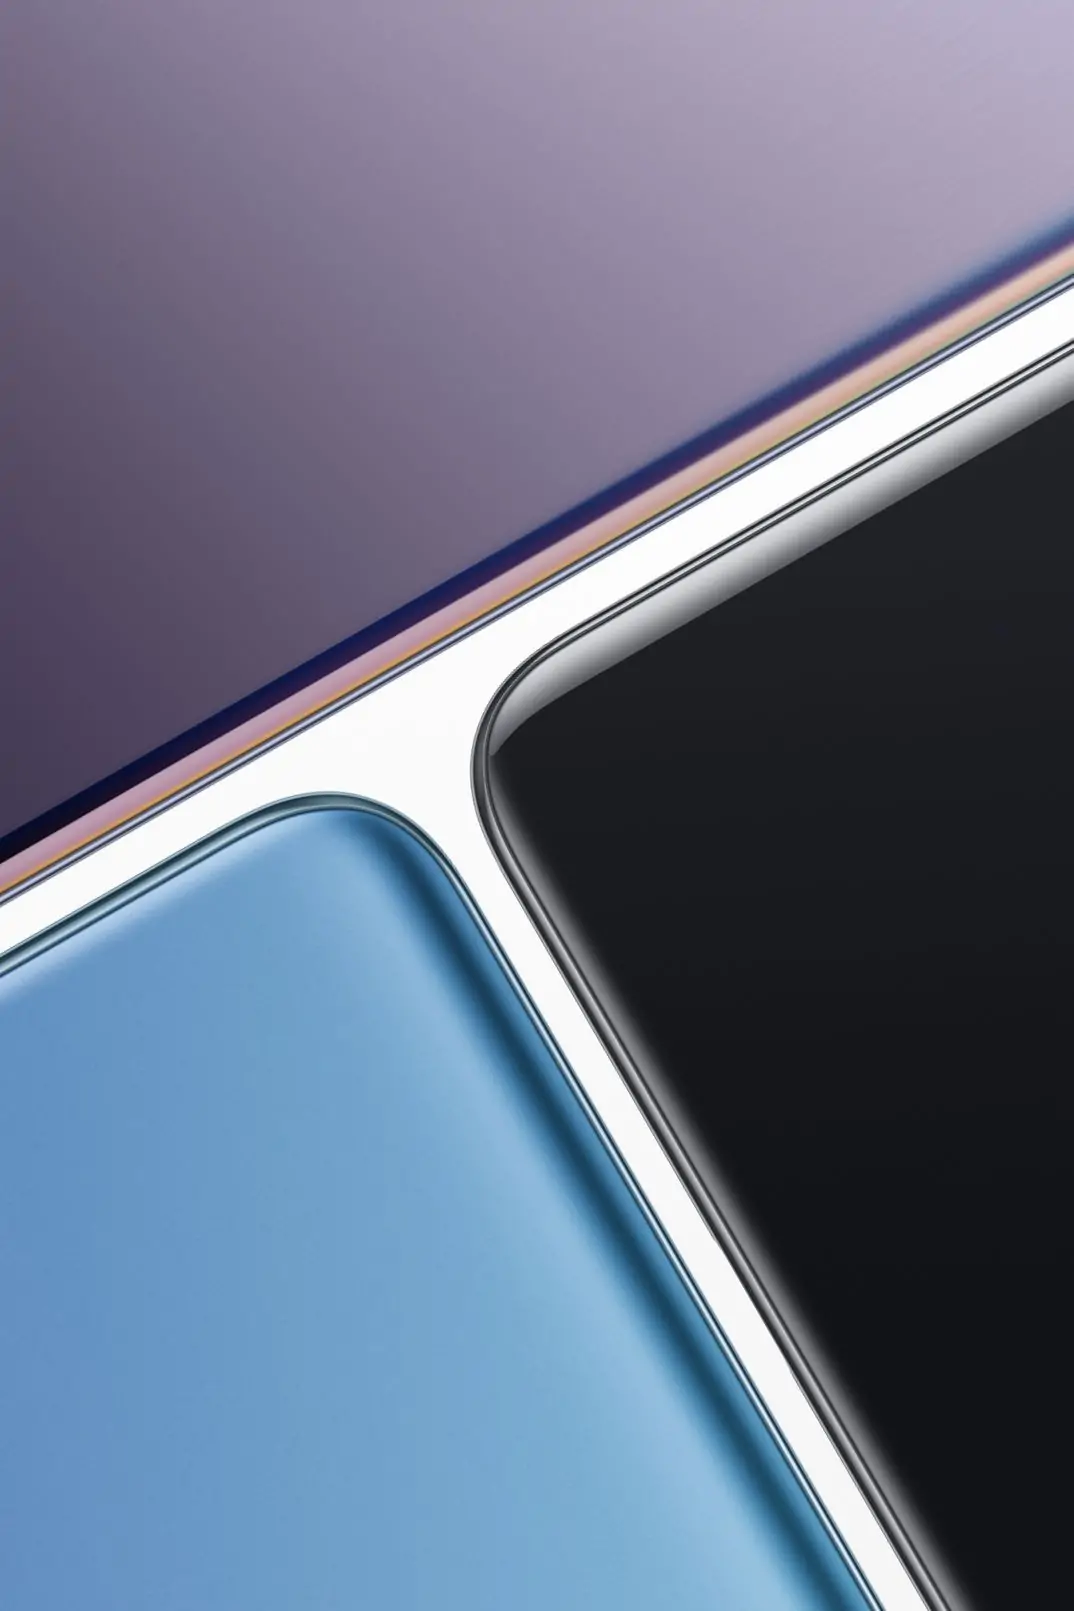 OnePlus 9 5G: Với sự kết hợp tối ưu giữa phần cứng và phần mềm, chiếc điện thoại OnePlus 9 5G đem đến trải nghiệm Android trơn tru và mượt mà. Thiết kế đẹp mắt cùng cấu hình cực kỳ cao cấp, đây là một chiếc điện thoại đáng để mua, xem hình ảnh và khám phá.